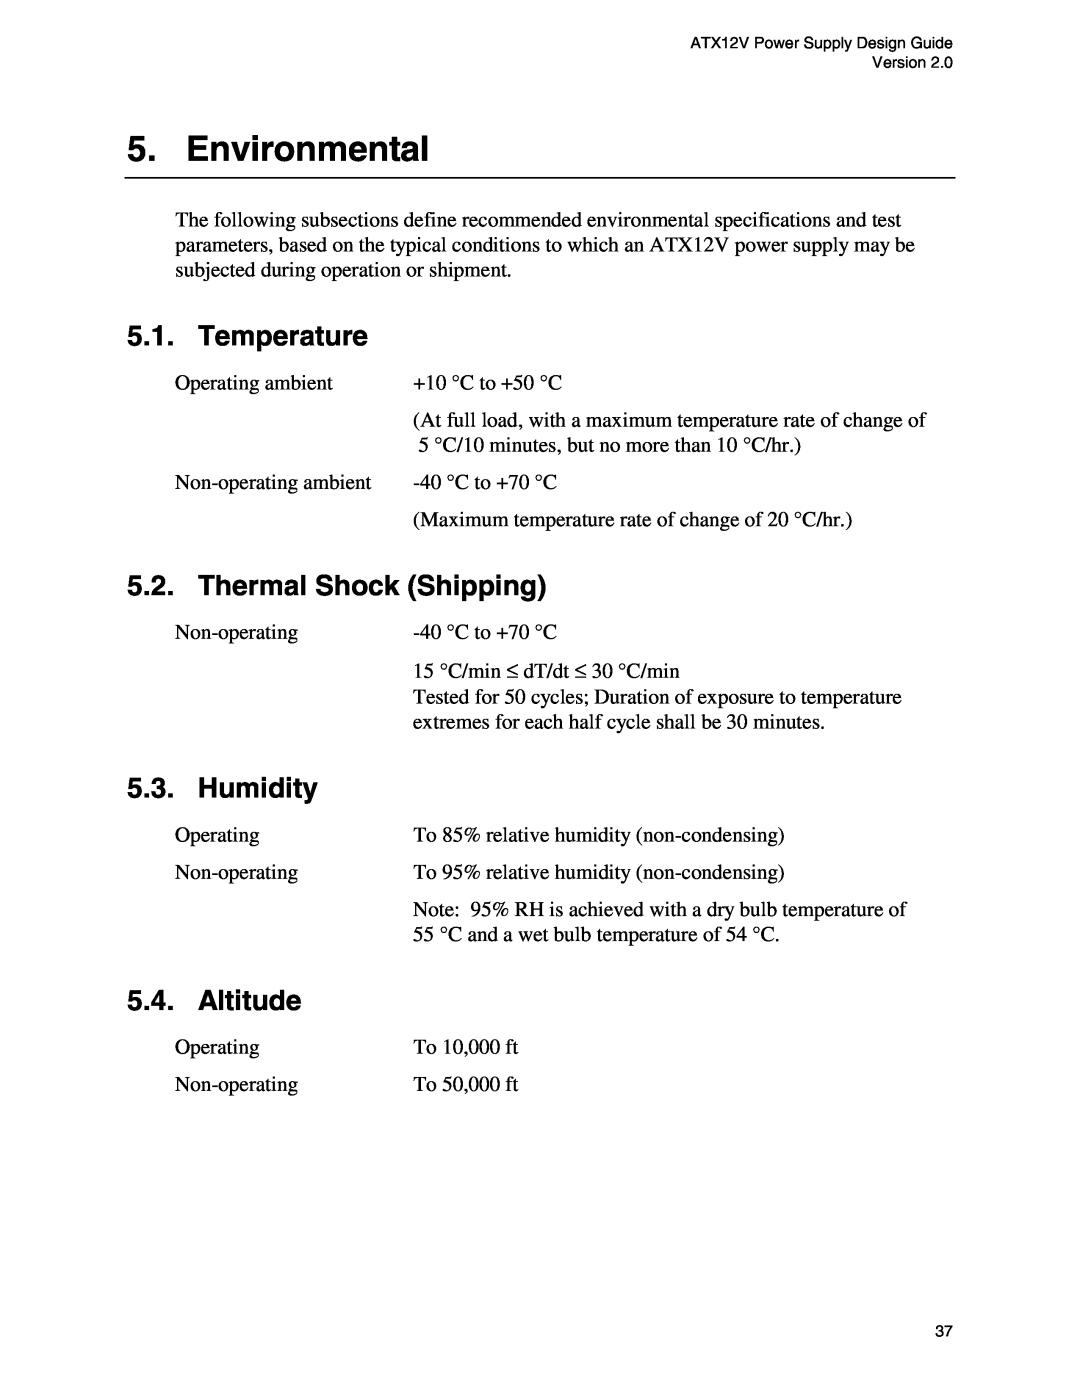 Intel ATX12V manual Environmental, Temperature, Thermal Shock Shipping, Humidity, Altitude 